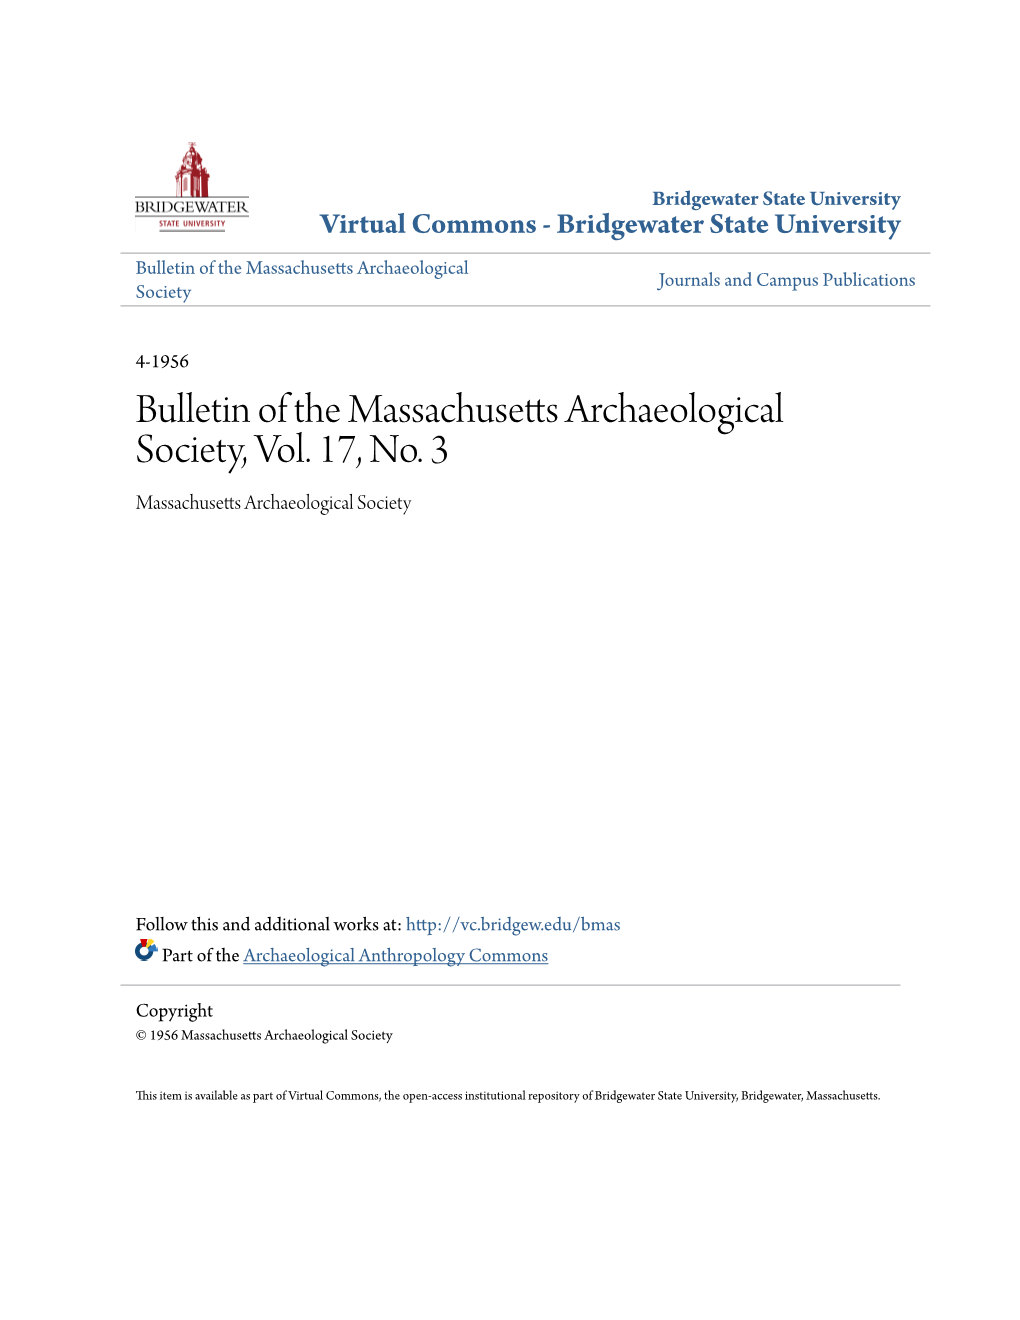 Bulletin of the Massachusetts Archaeological Society, Vol. 17, No. 3 Massachusetts Archaeological Society